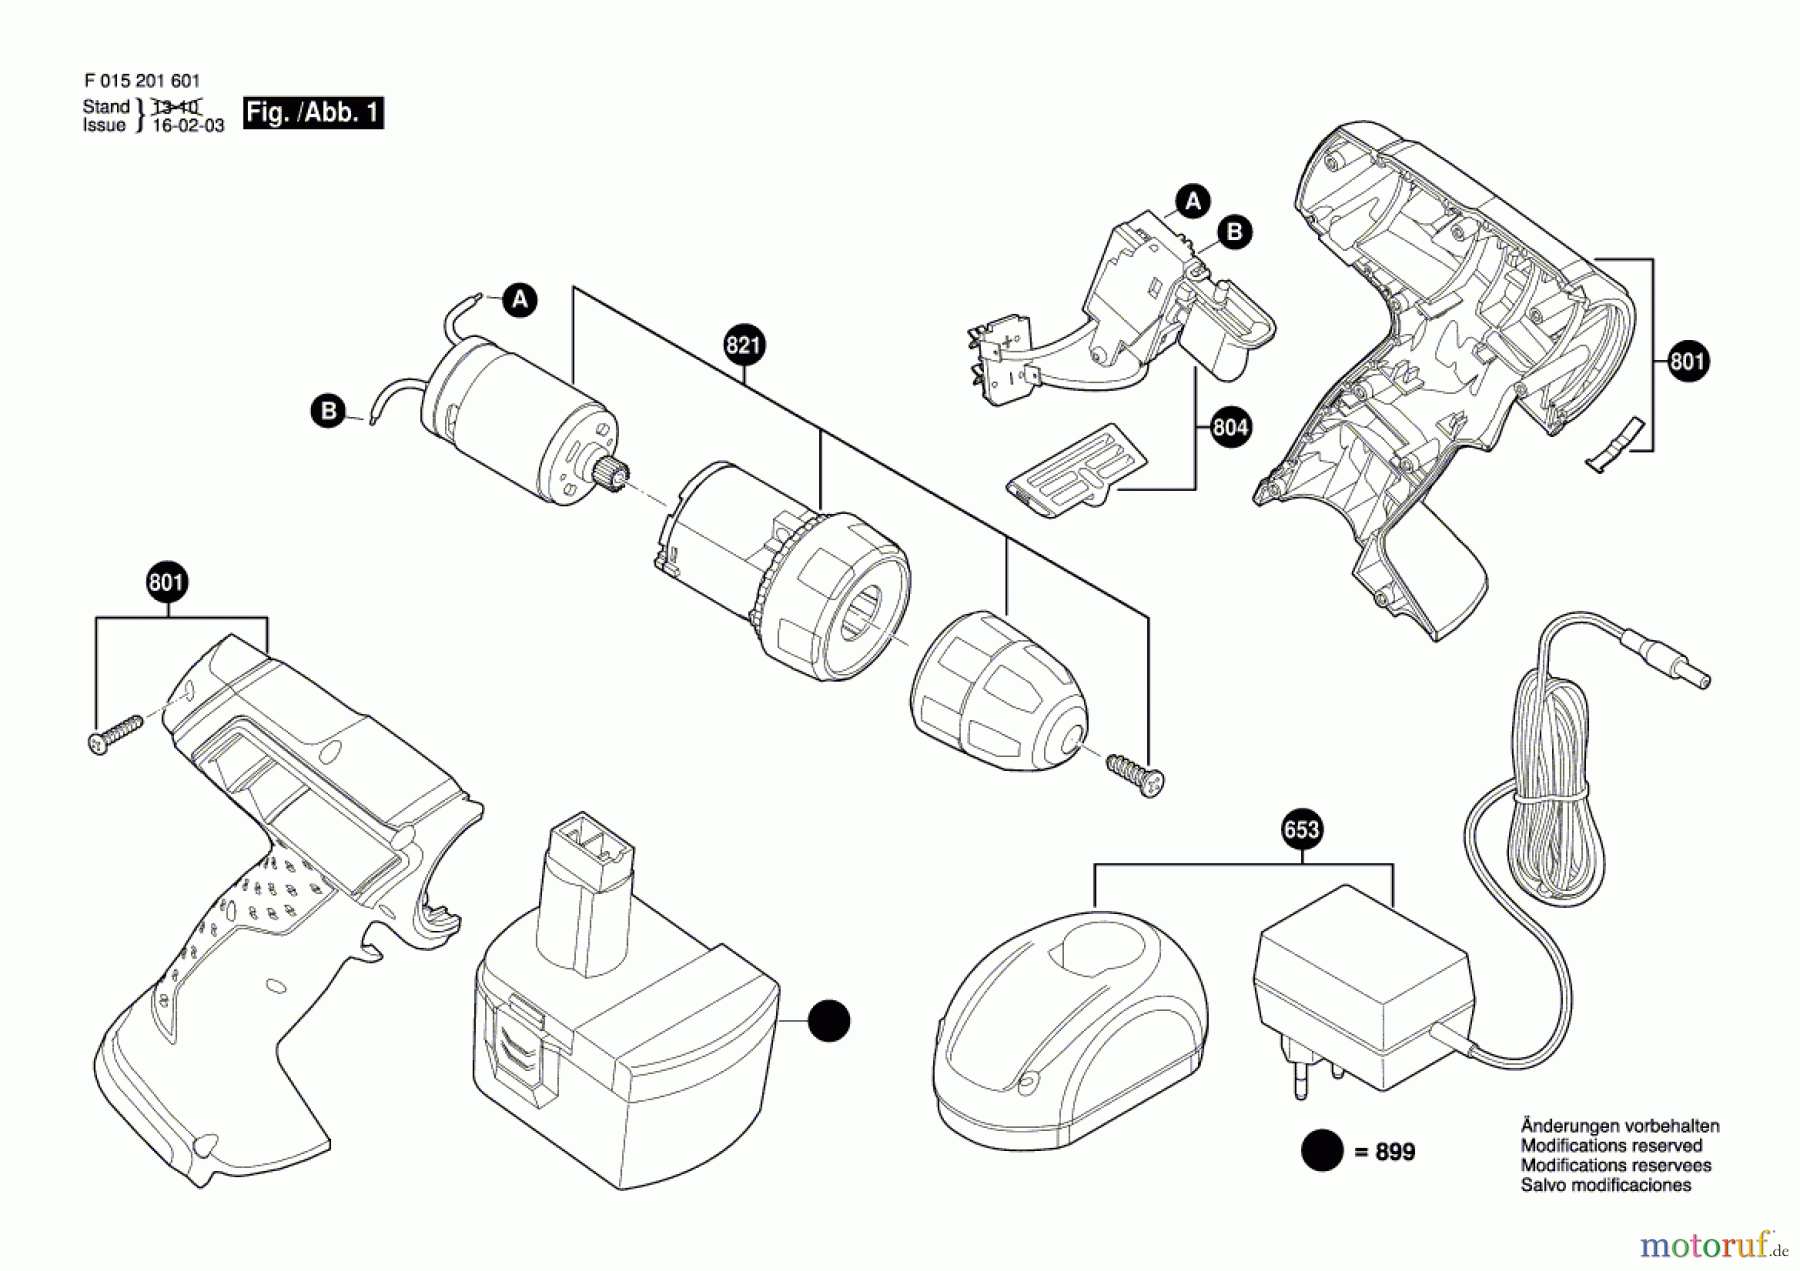  Bosch Akku Werkzeug Akku-Bohrschrauber 2017 Seite 1